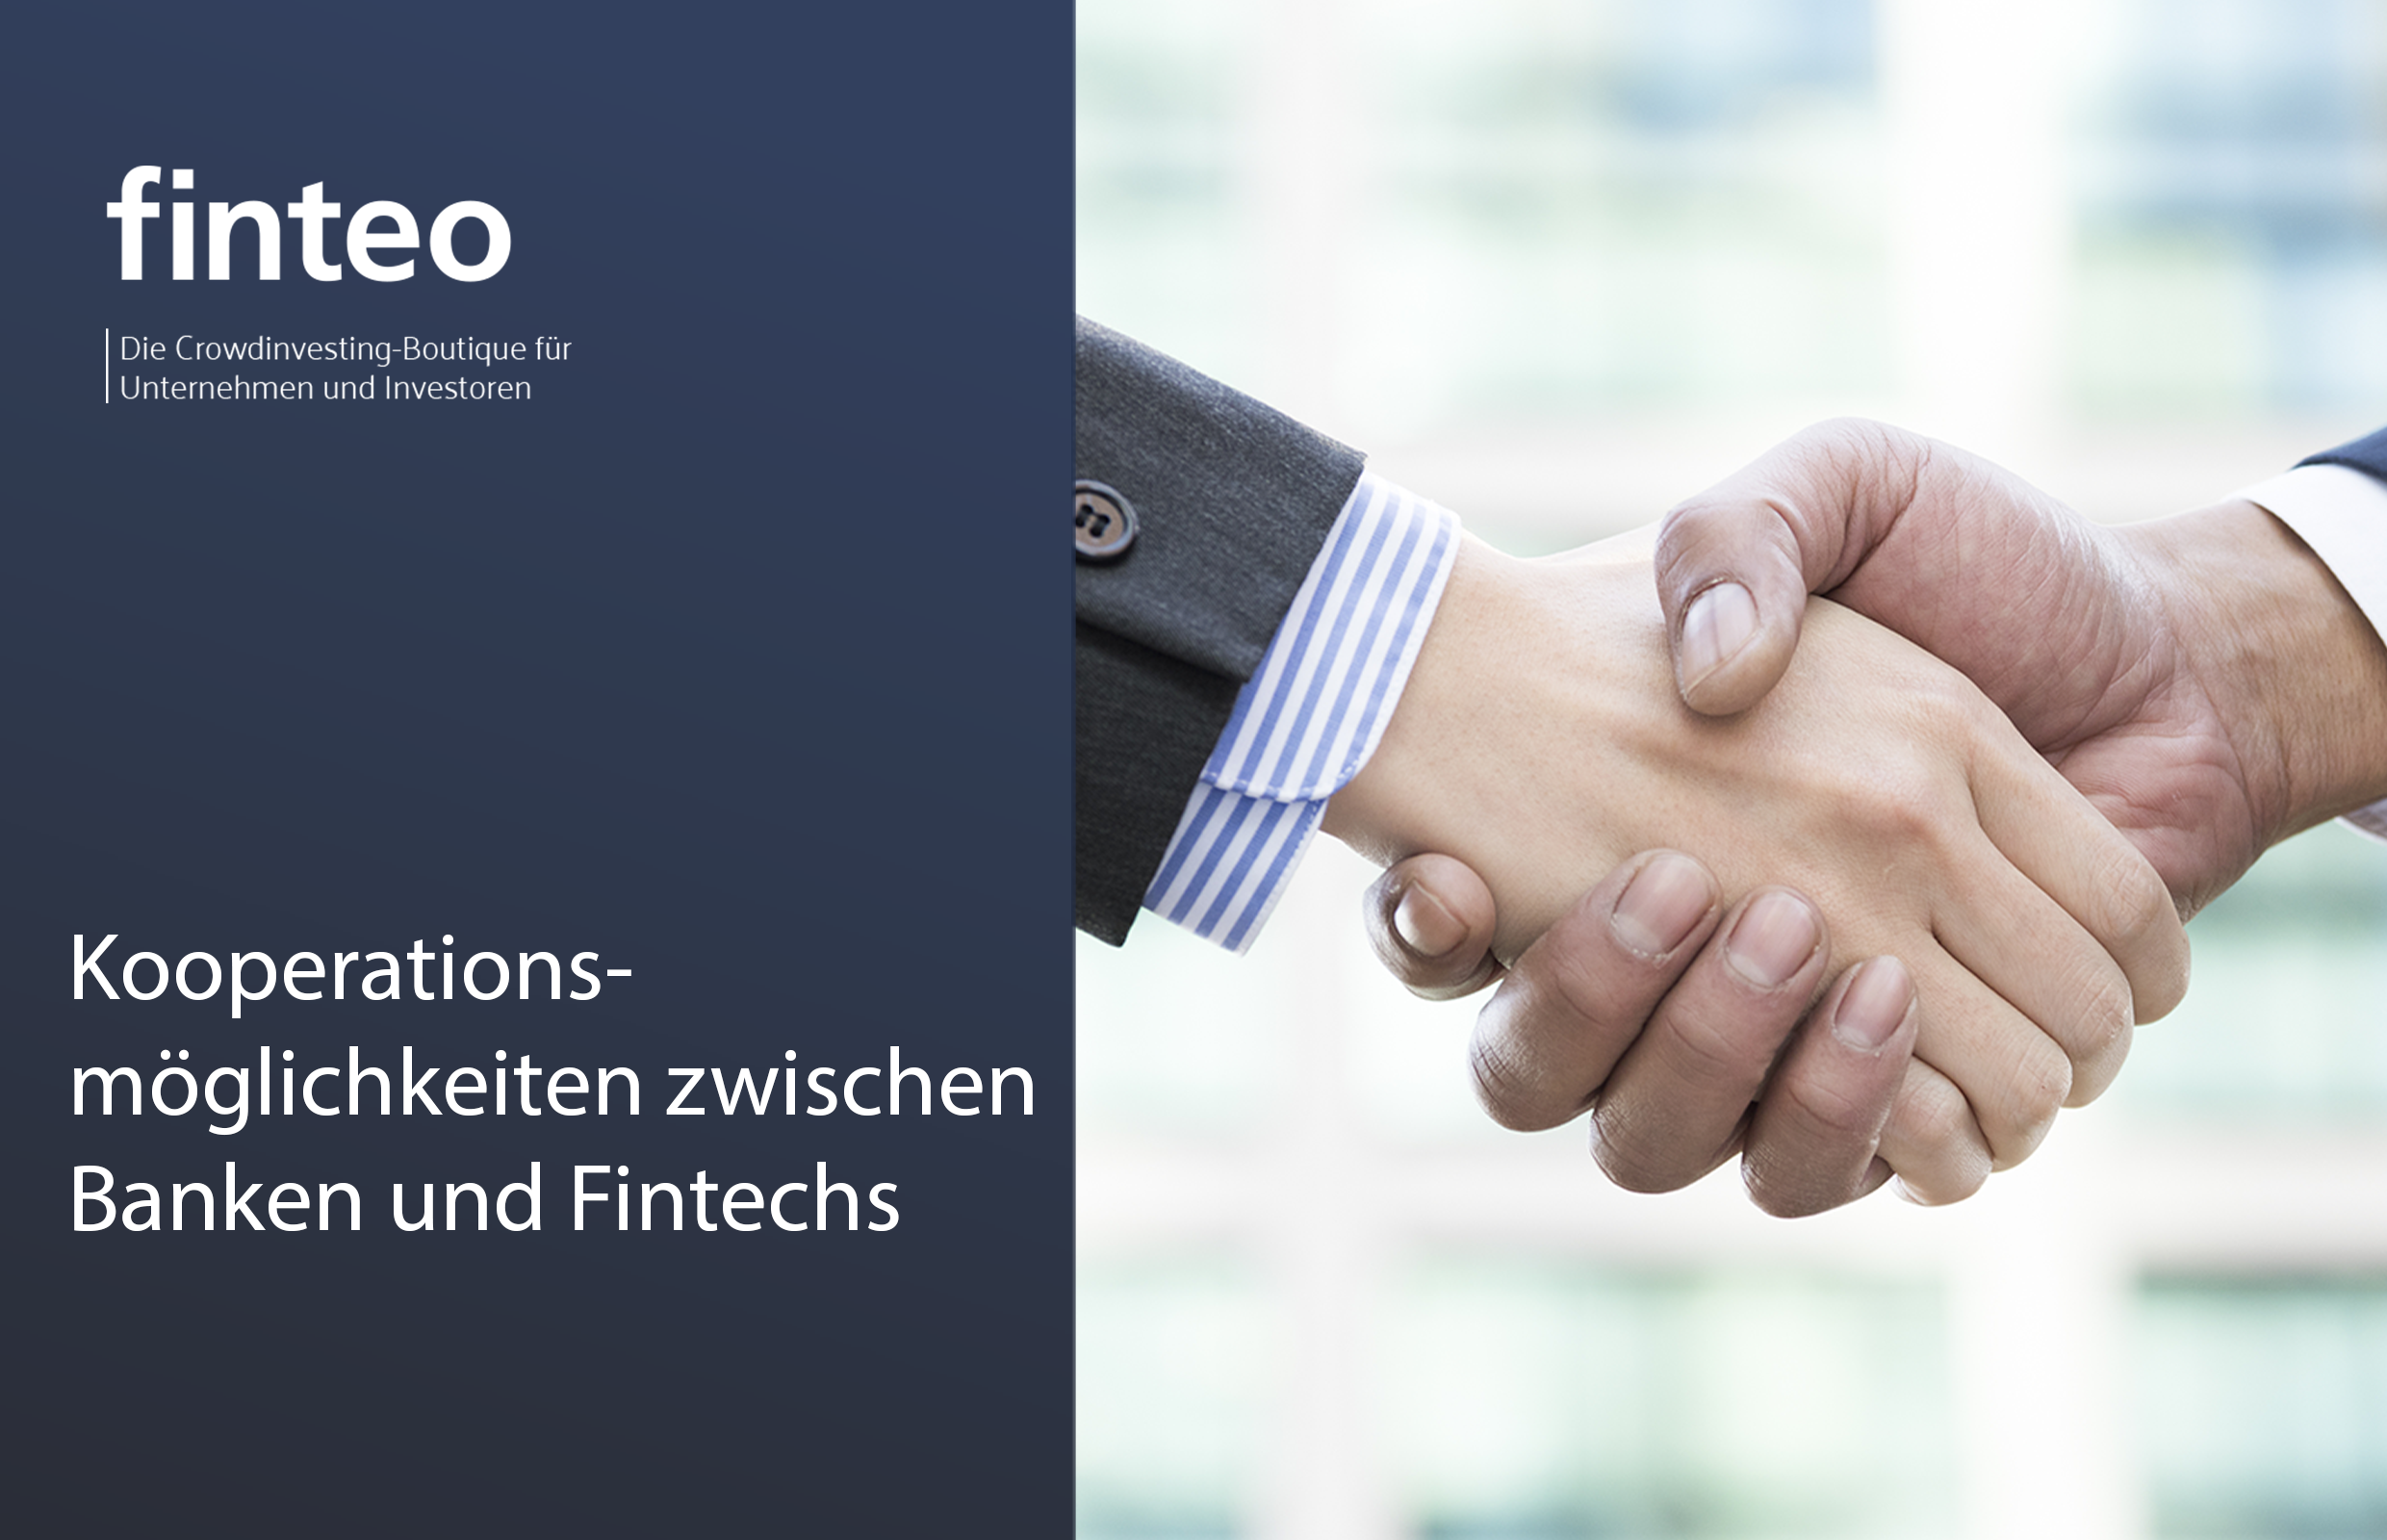 finteo.de | Kooperationsmöglichkeiten zwischen Banken und Fintechs - Kooperationsmöglichkeiten